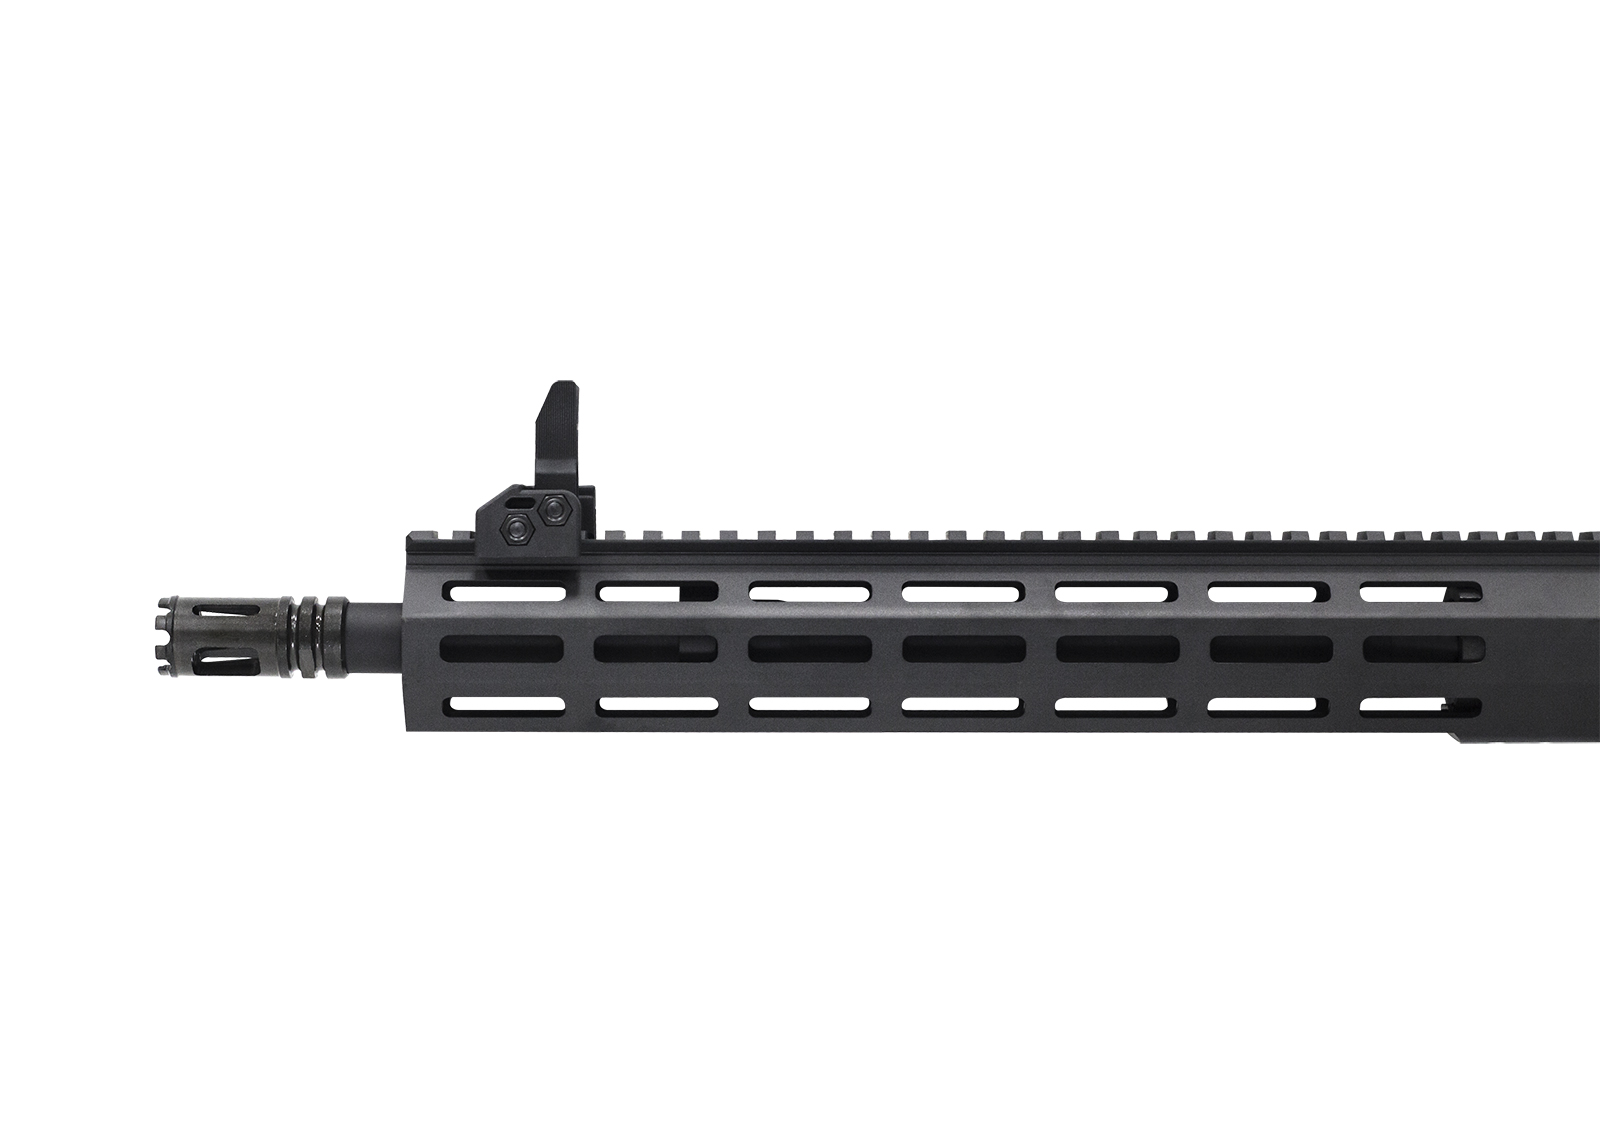 Modify XtremeDuty AR-15 Airsoft AEG Carbine